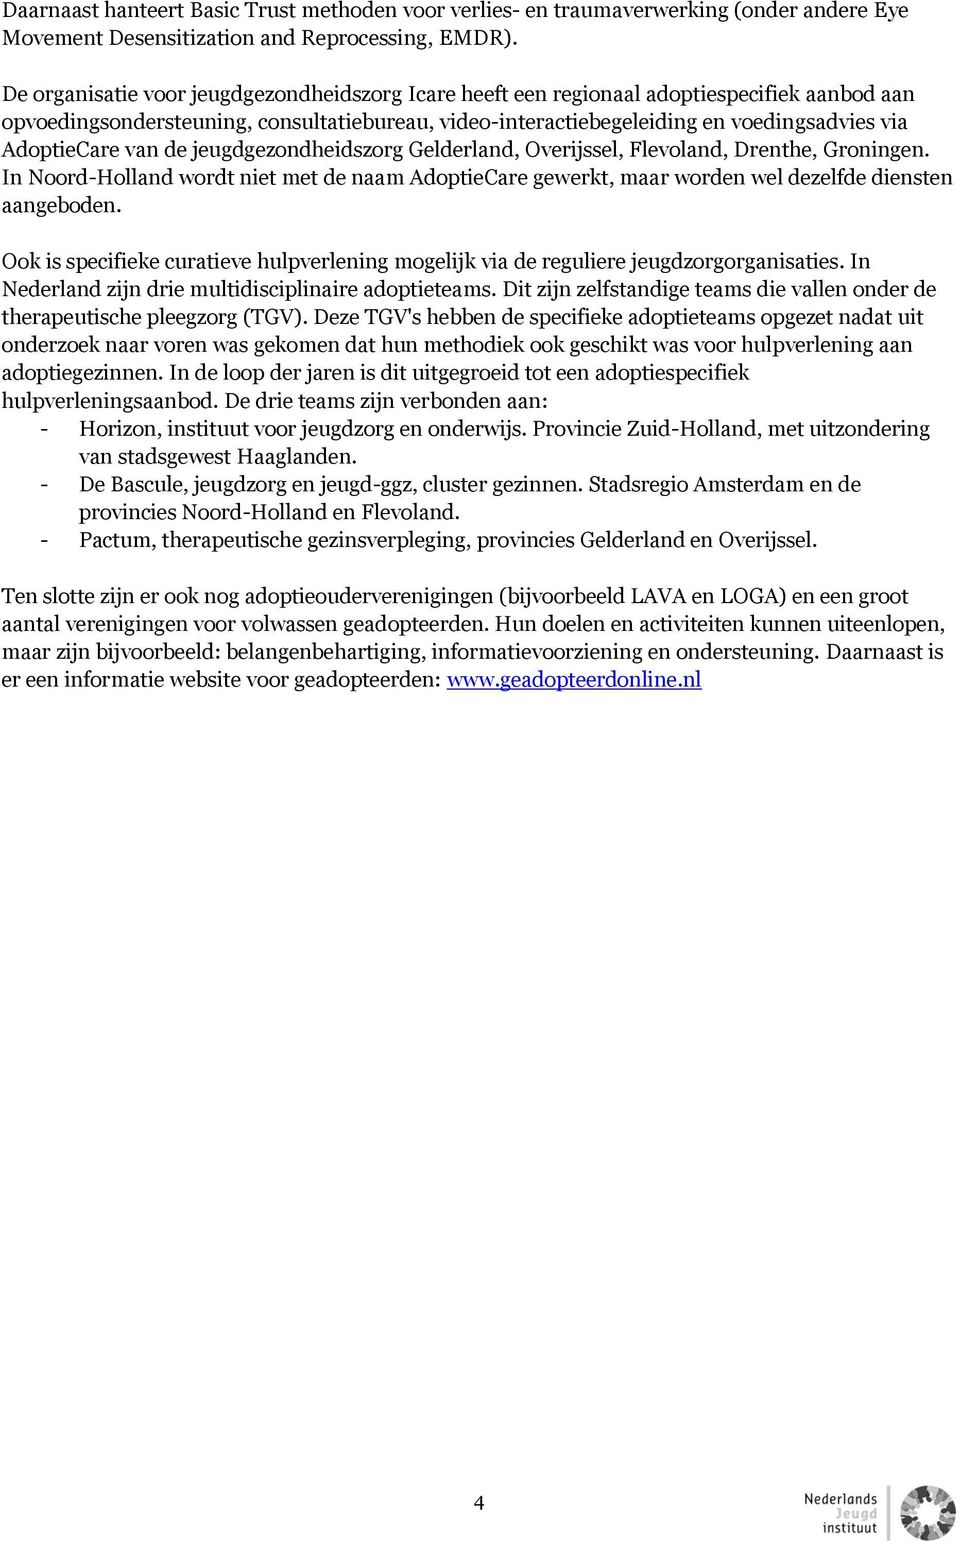 AdoptieCare van de jeugdgezondheidszorg Gelderland, Overijssel, Flevoland, Drenthe, Groningen.